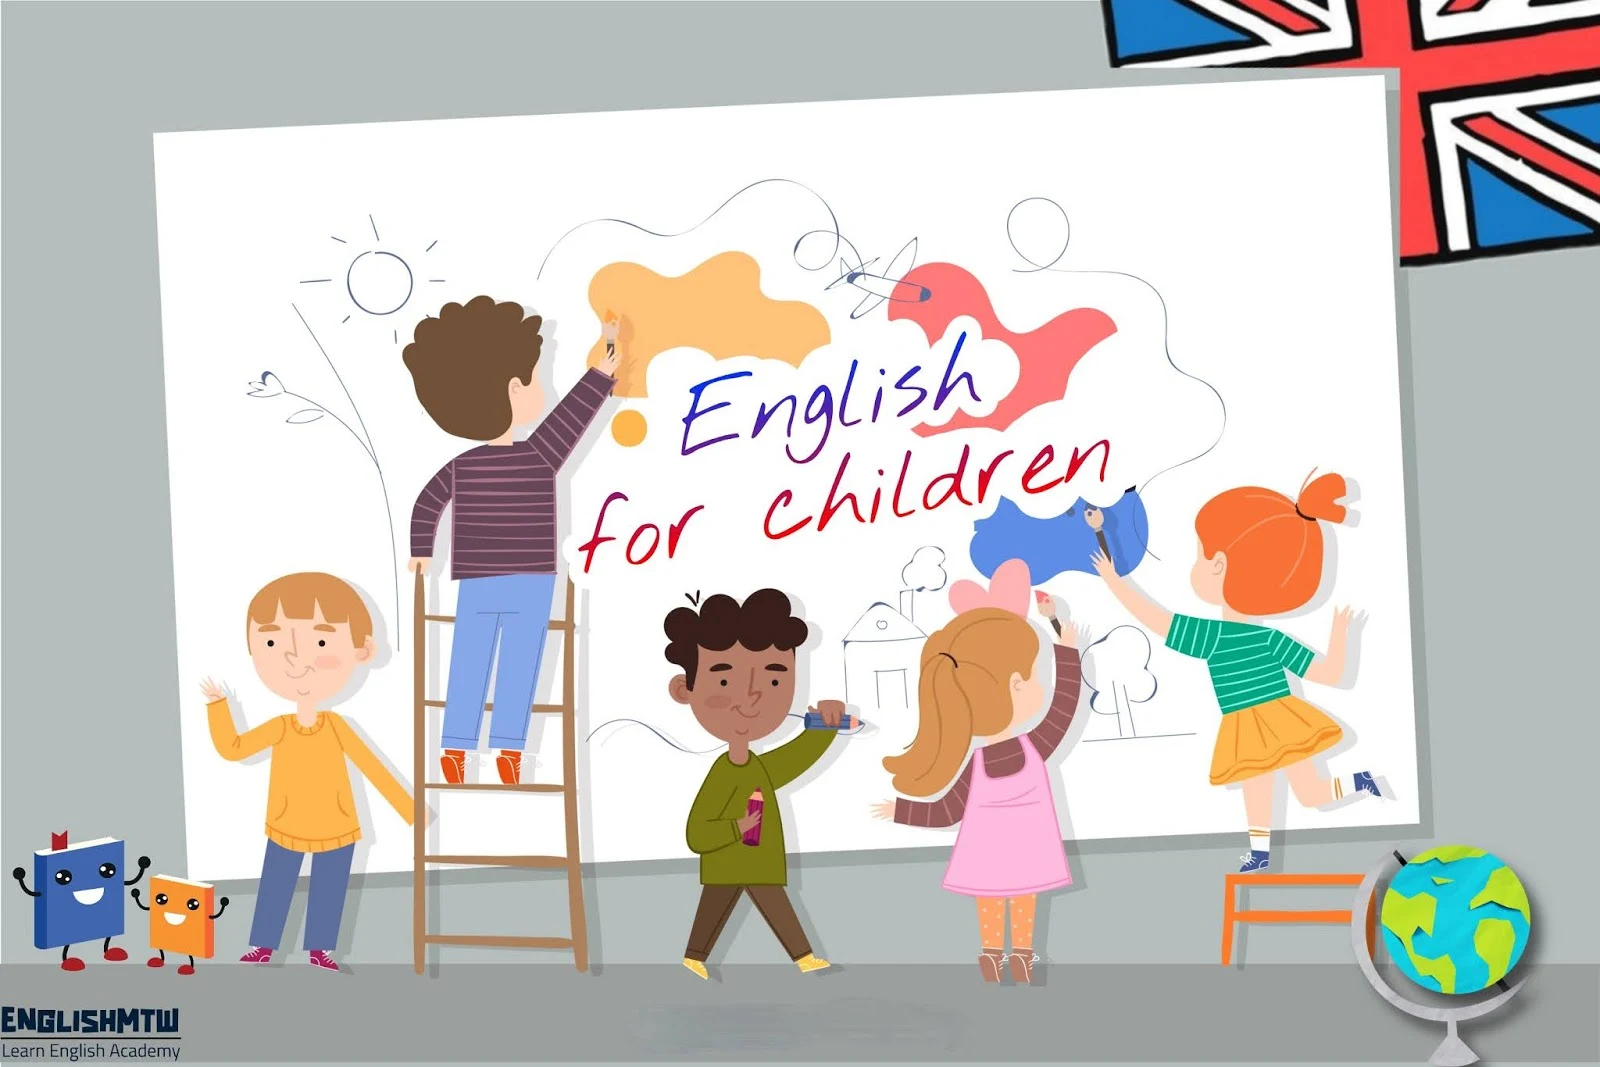 اللغة الانجليزية للاطفال: أفكار وطرق مبتكرة لتعليمهم